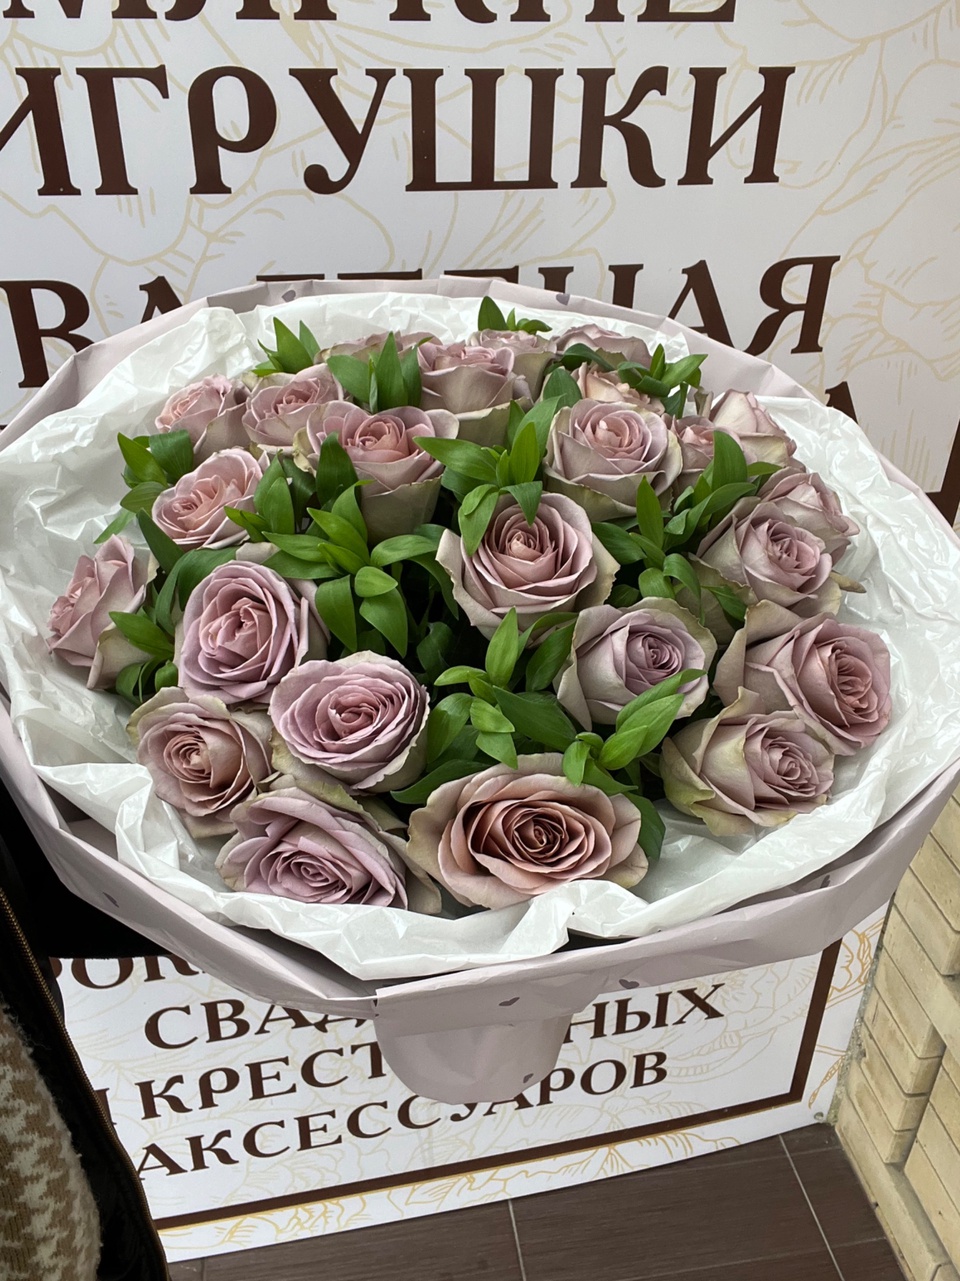 Розы - 4 500 ₽, заказать онлайн.